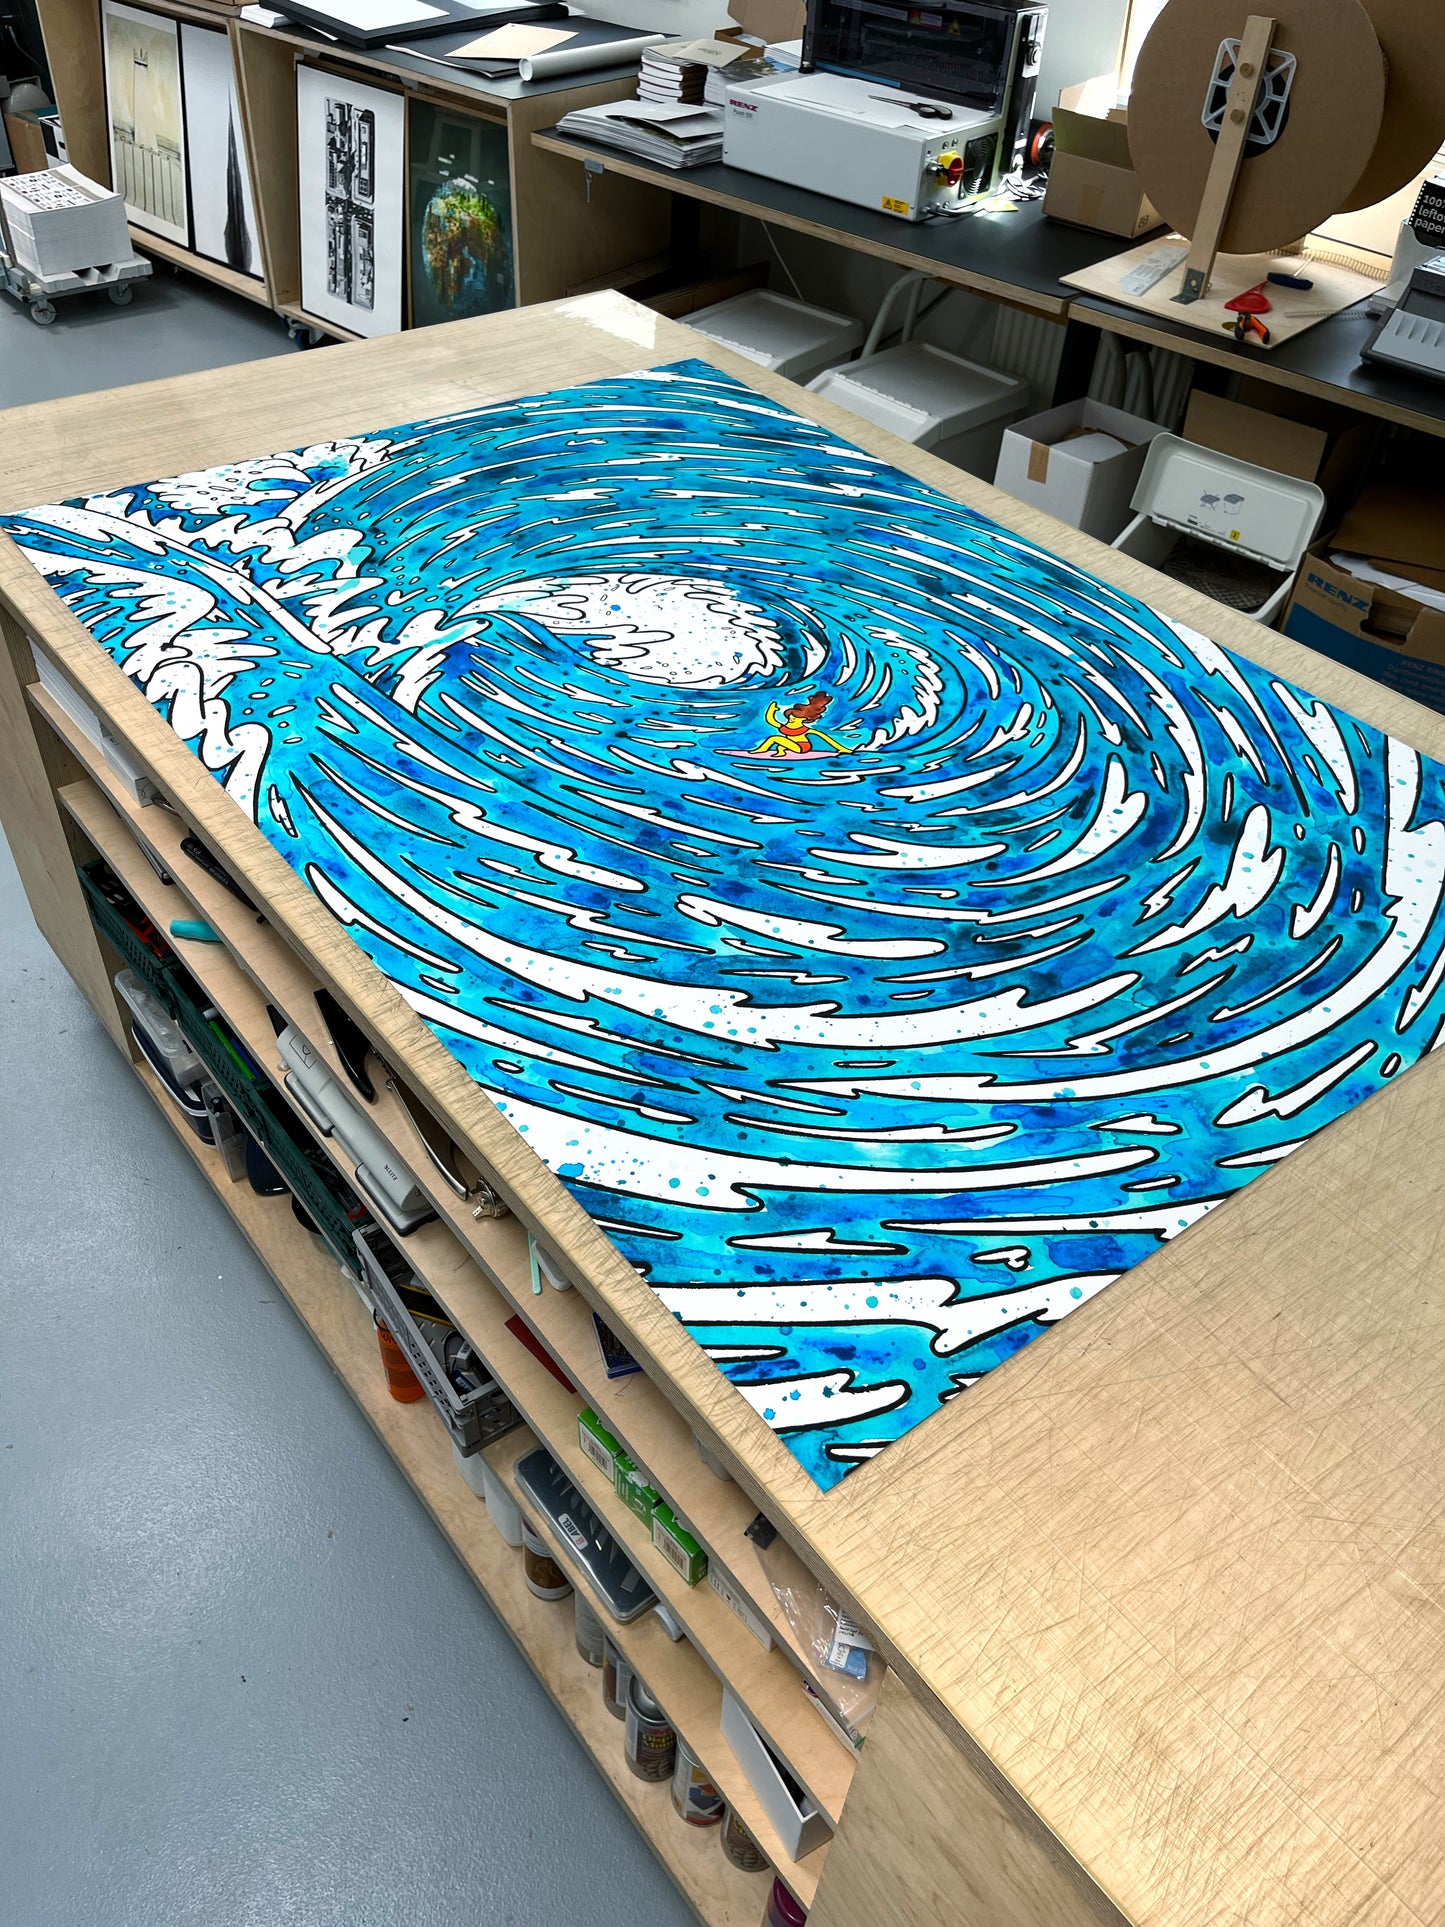 Surfermädchen - 110x160 cm